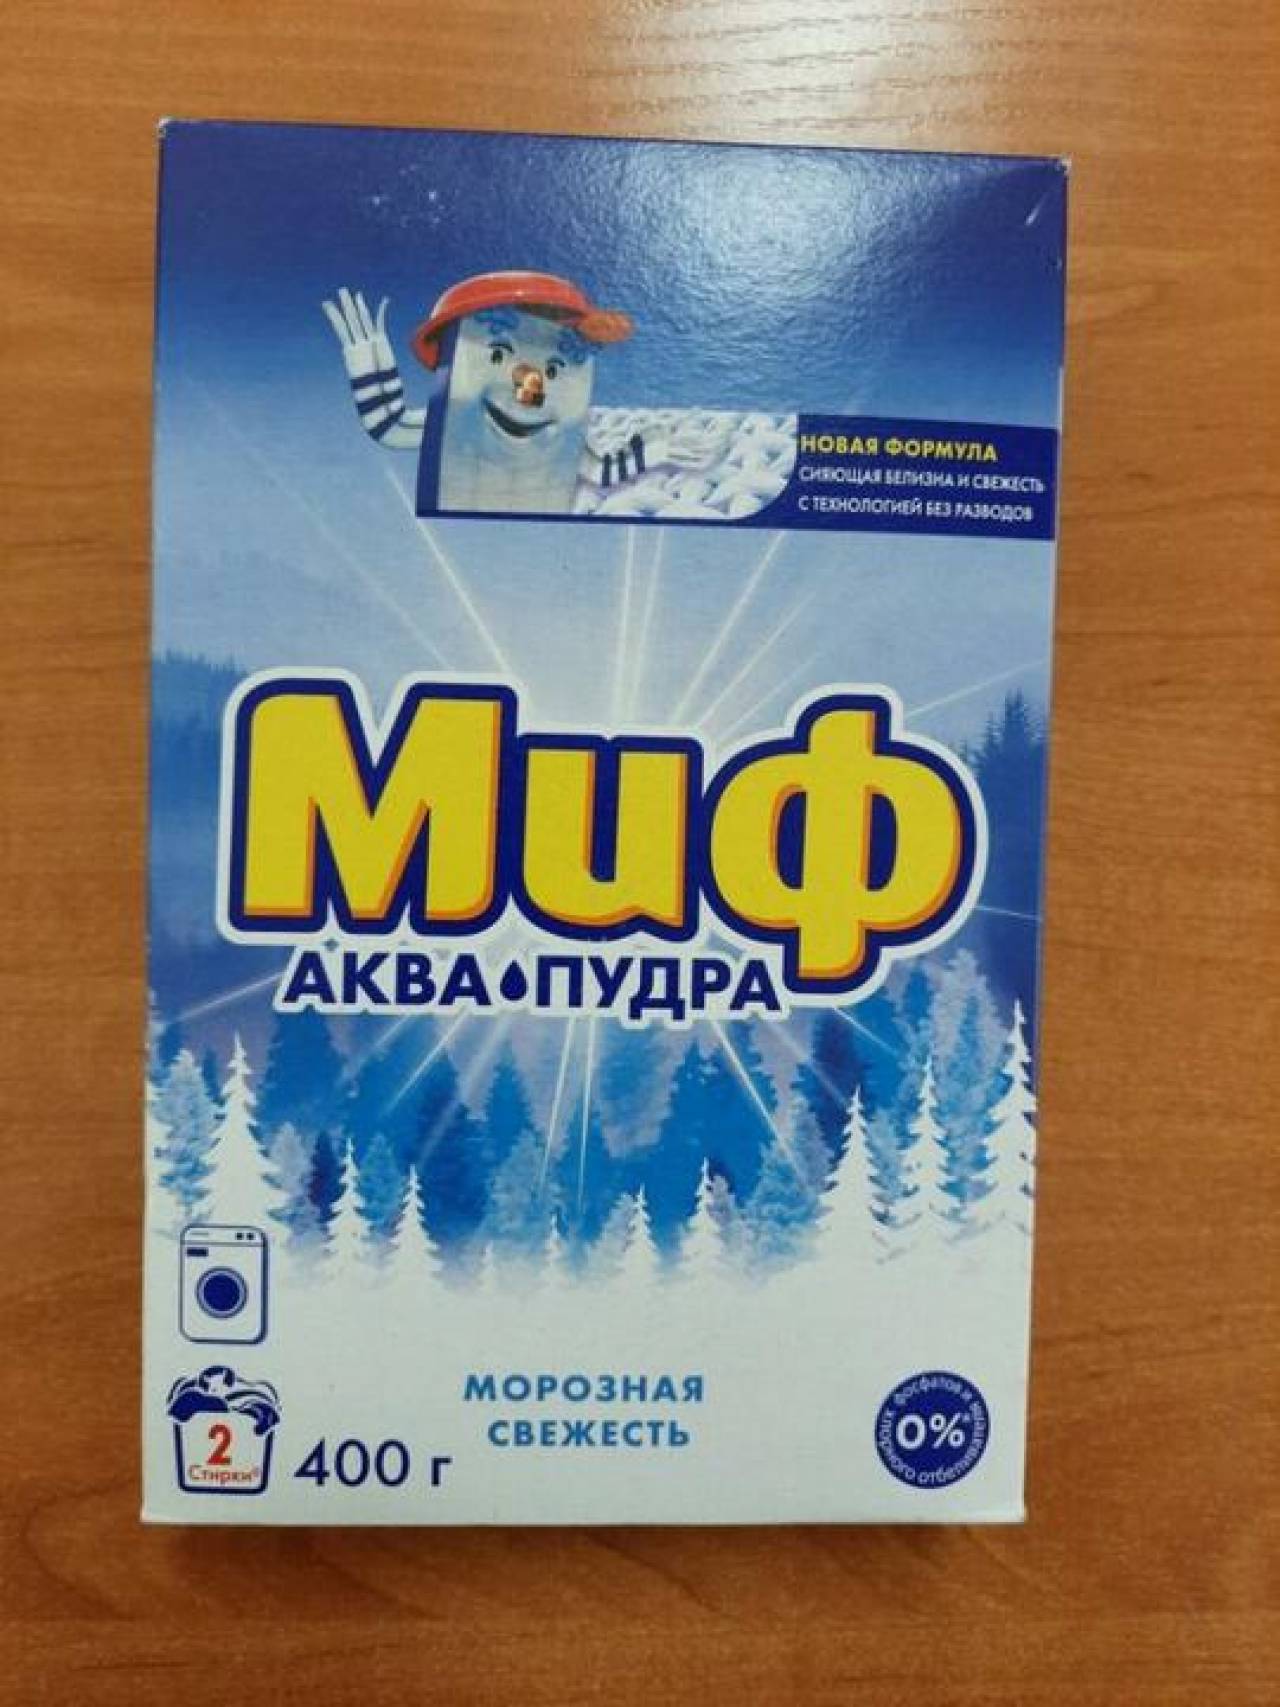 Стирает не так хорошо, как обещают: в Беларуси запретили продавать популярный российский порошок